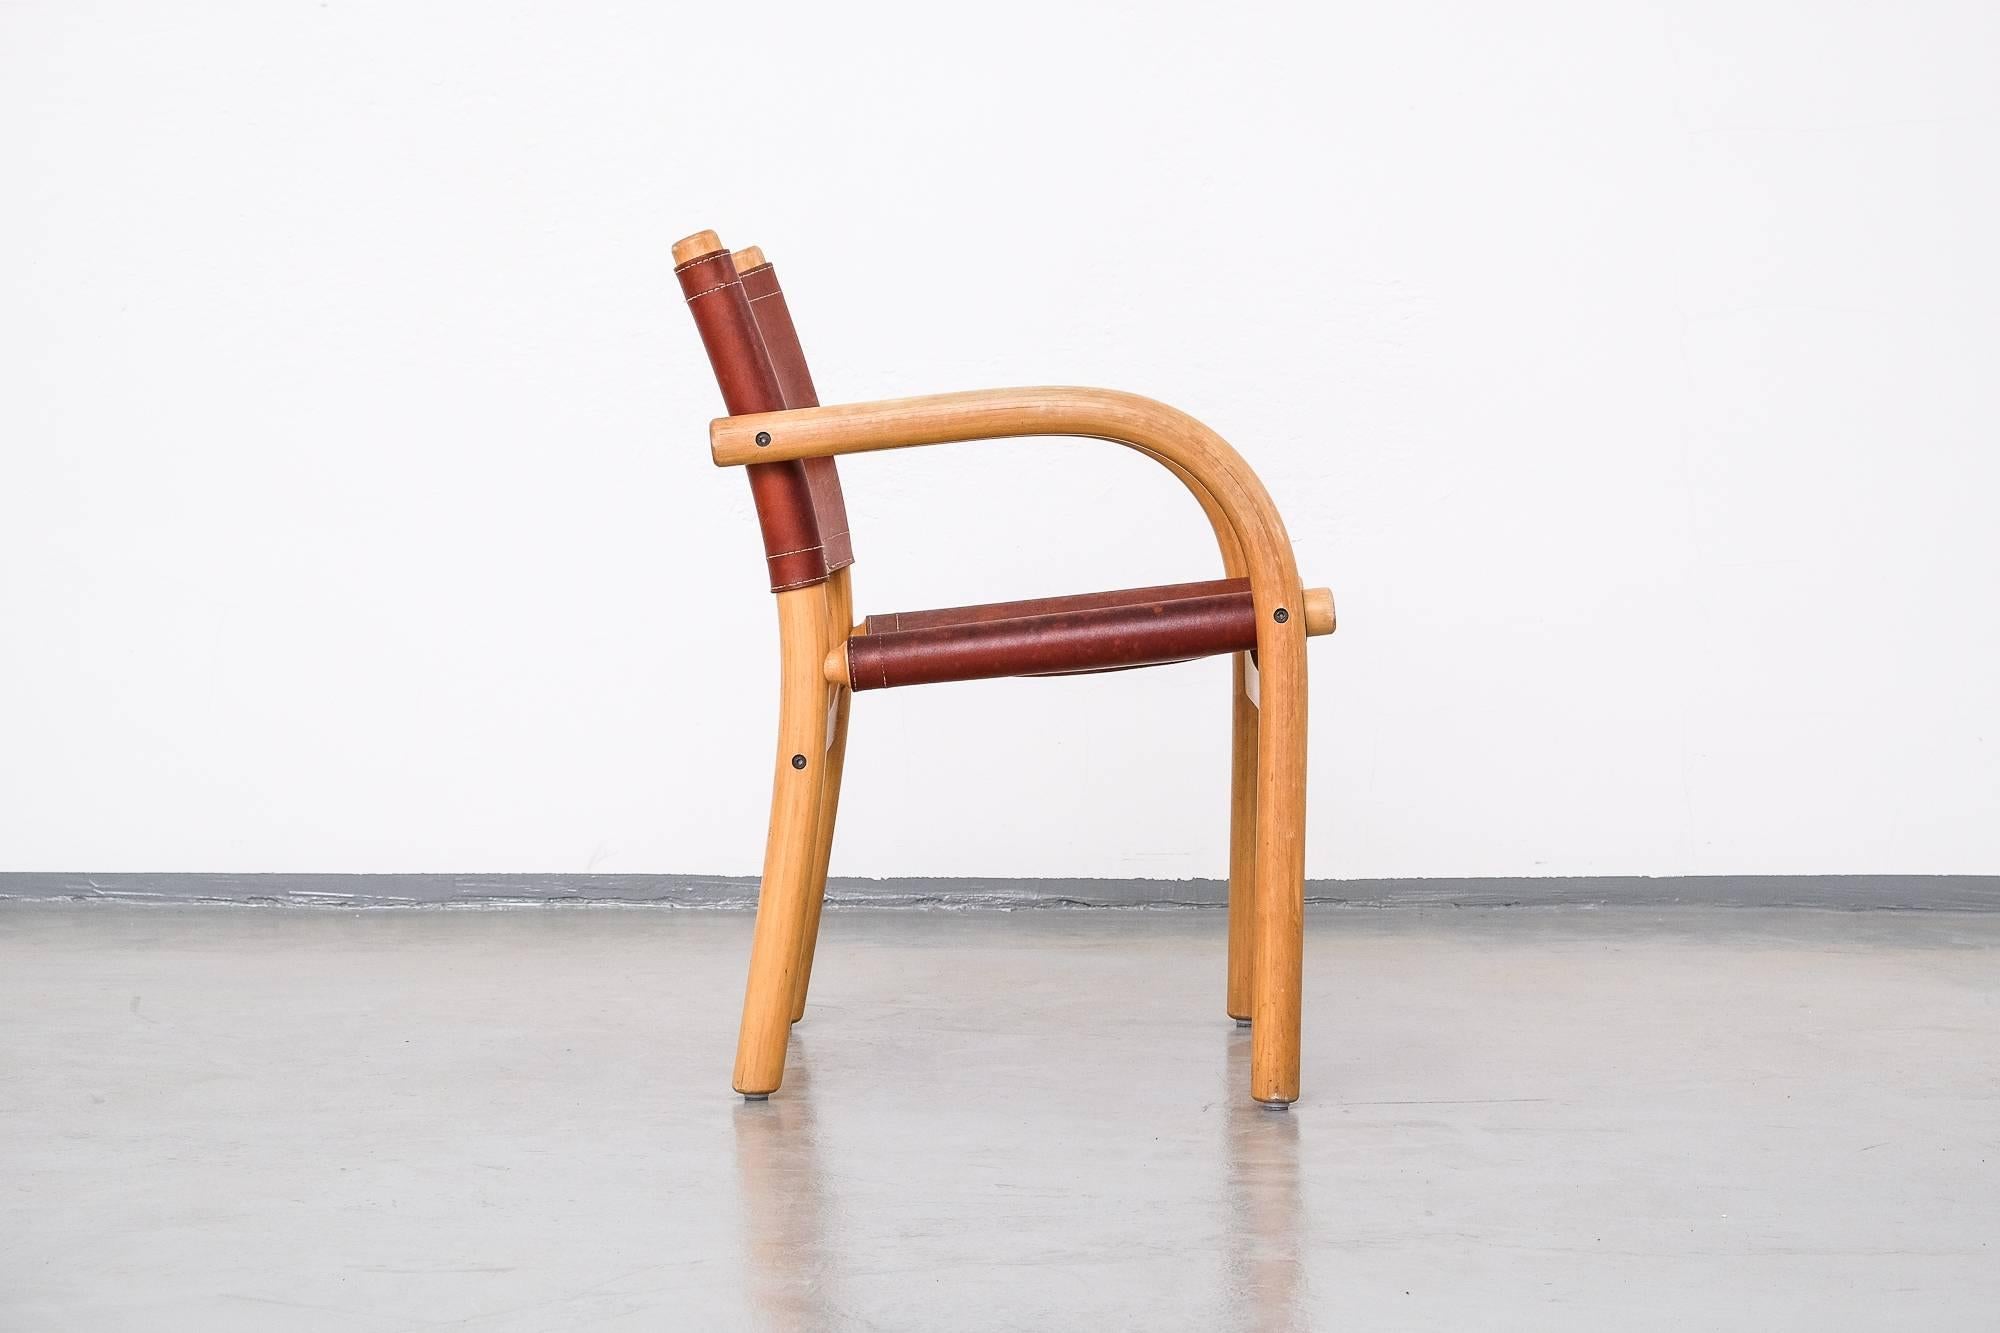 Leather Scandinavian Modern 1970s Safari Chair 411 by Ben af Schultén for Artek